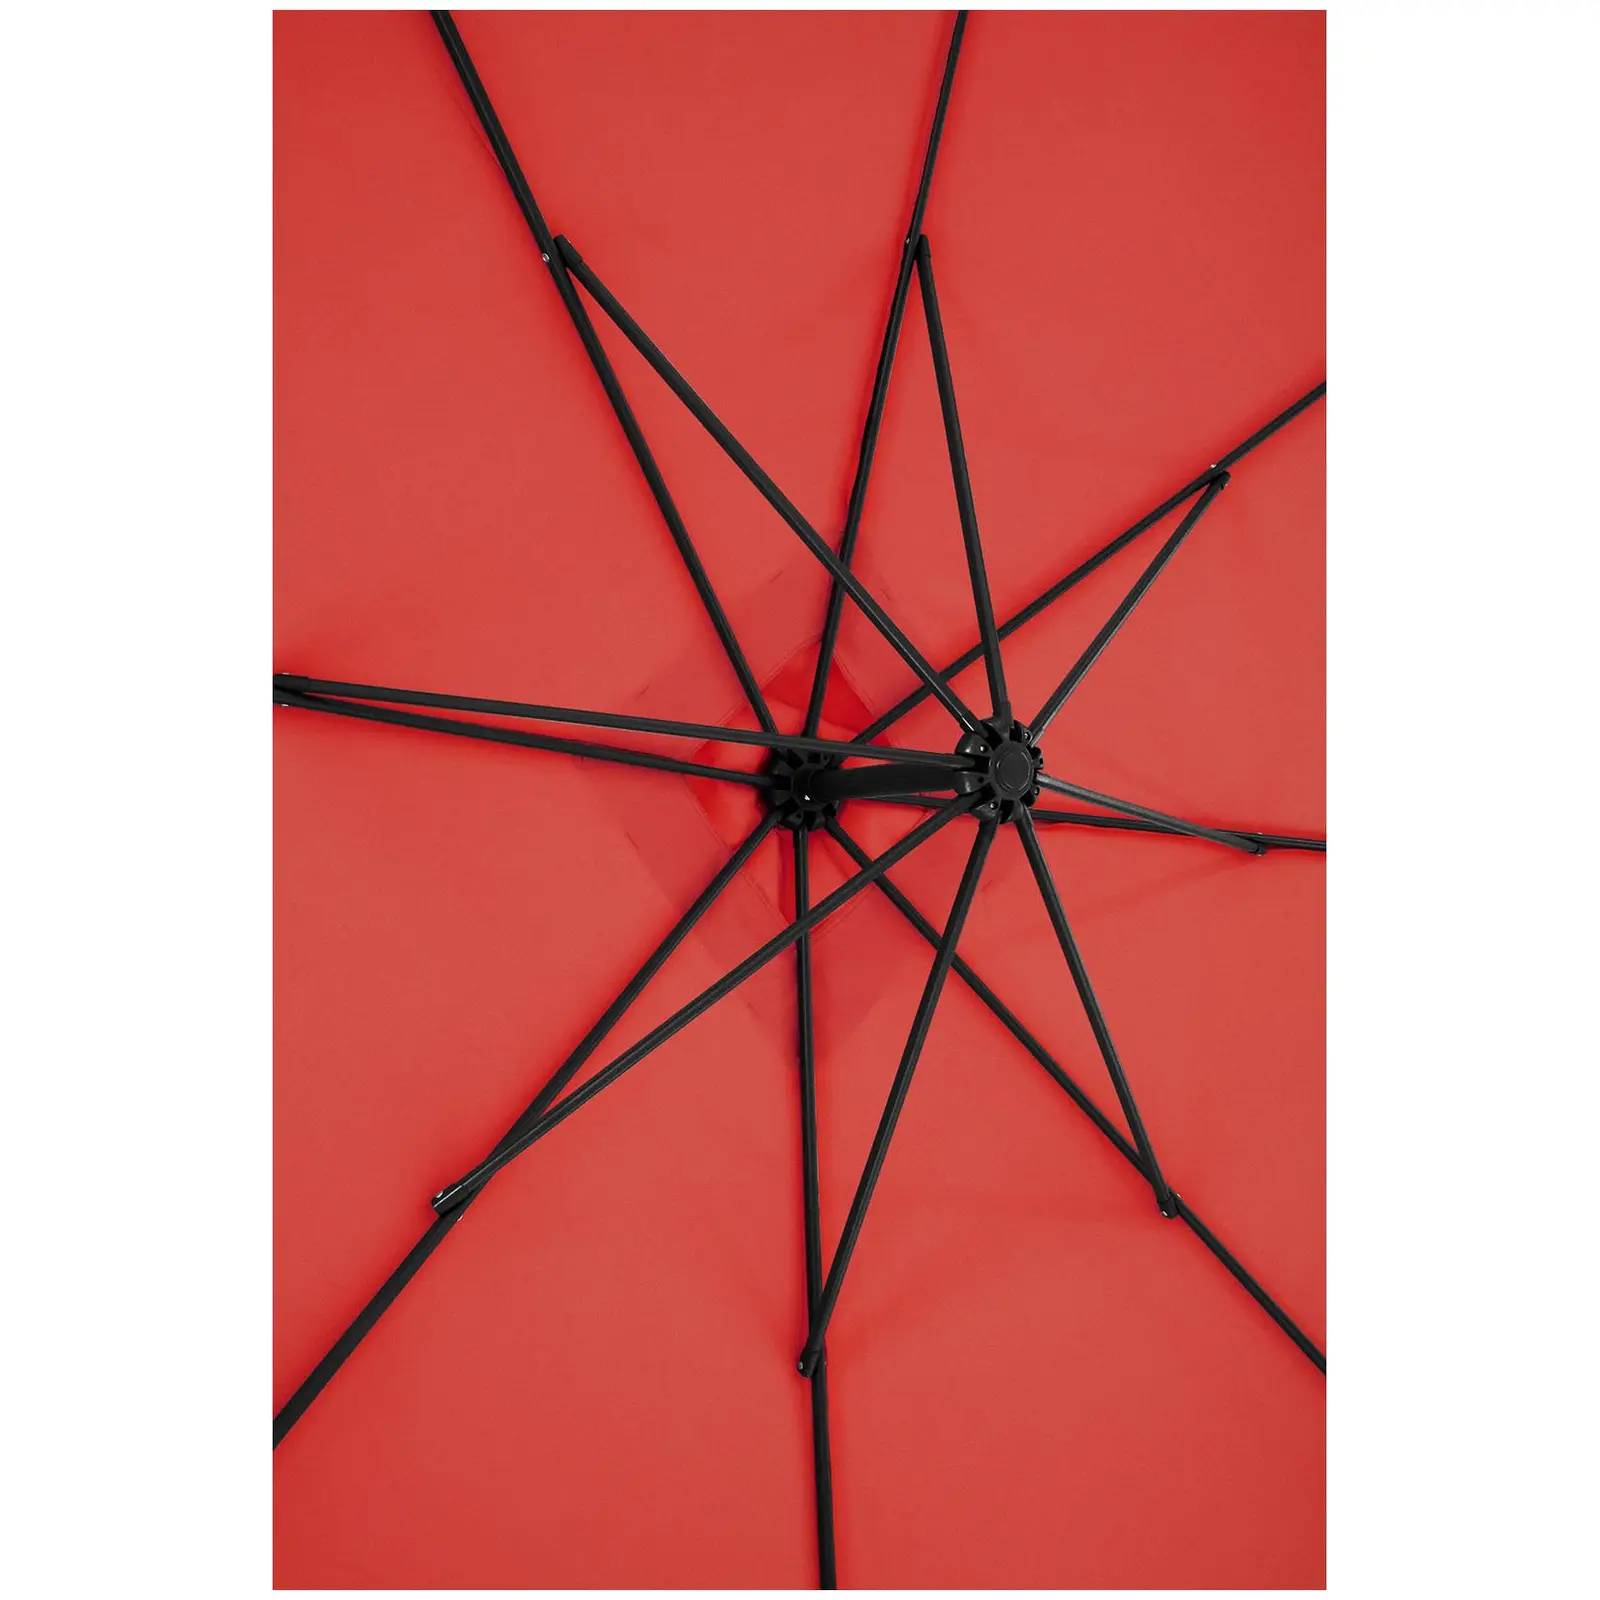 Trädgårdsparasoll - rött - fyrkantigt - 250 x 250 cm - kan lutas